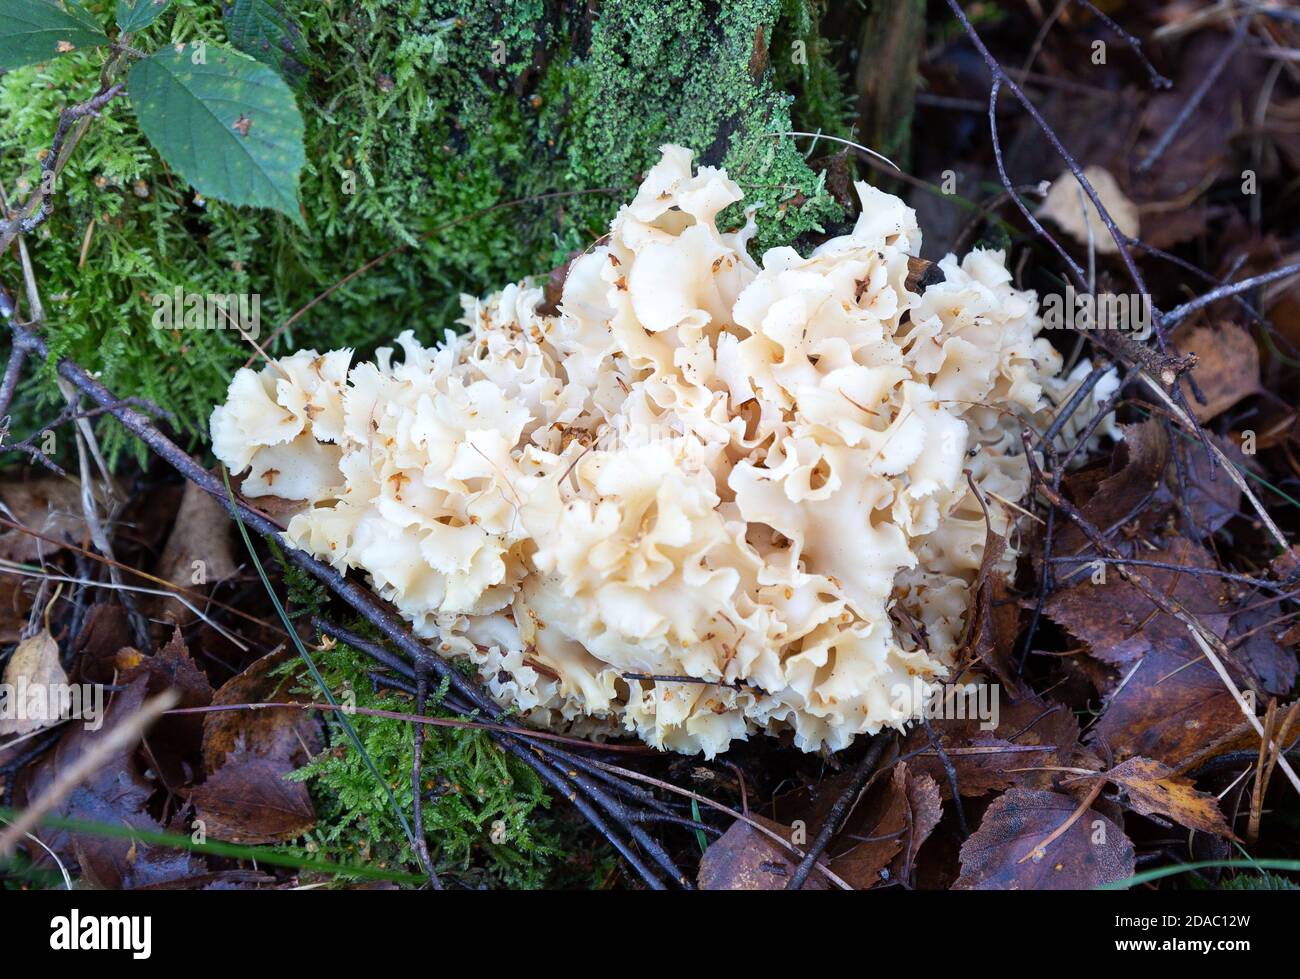 Blumenkohlpilz ( Sparassis crispa ), ein essbarer Pilz wächst in Suffolk, Großbritannien. Auch bekannt als Sparassis und Blumenkohlpilz. Stockfoto